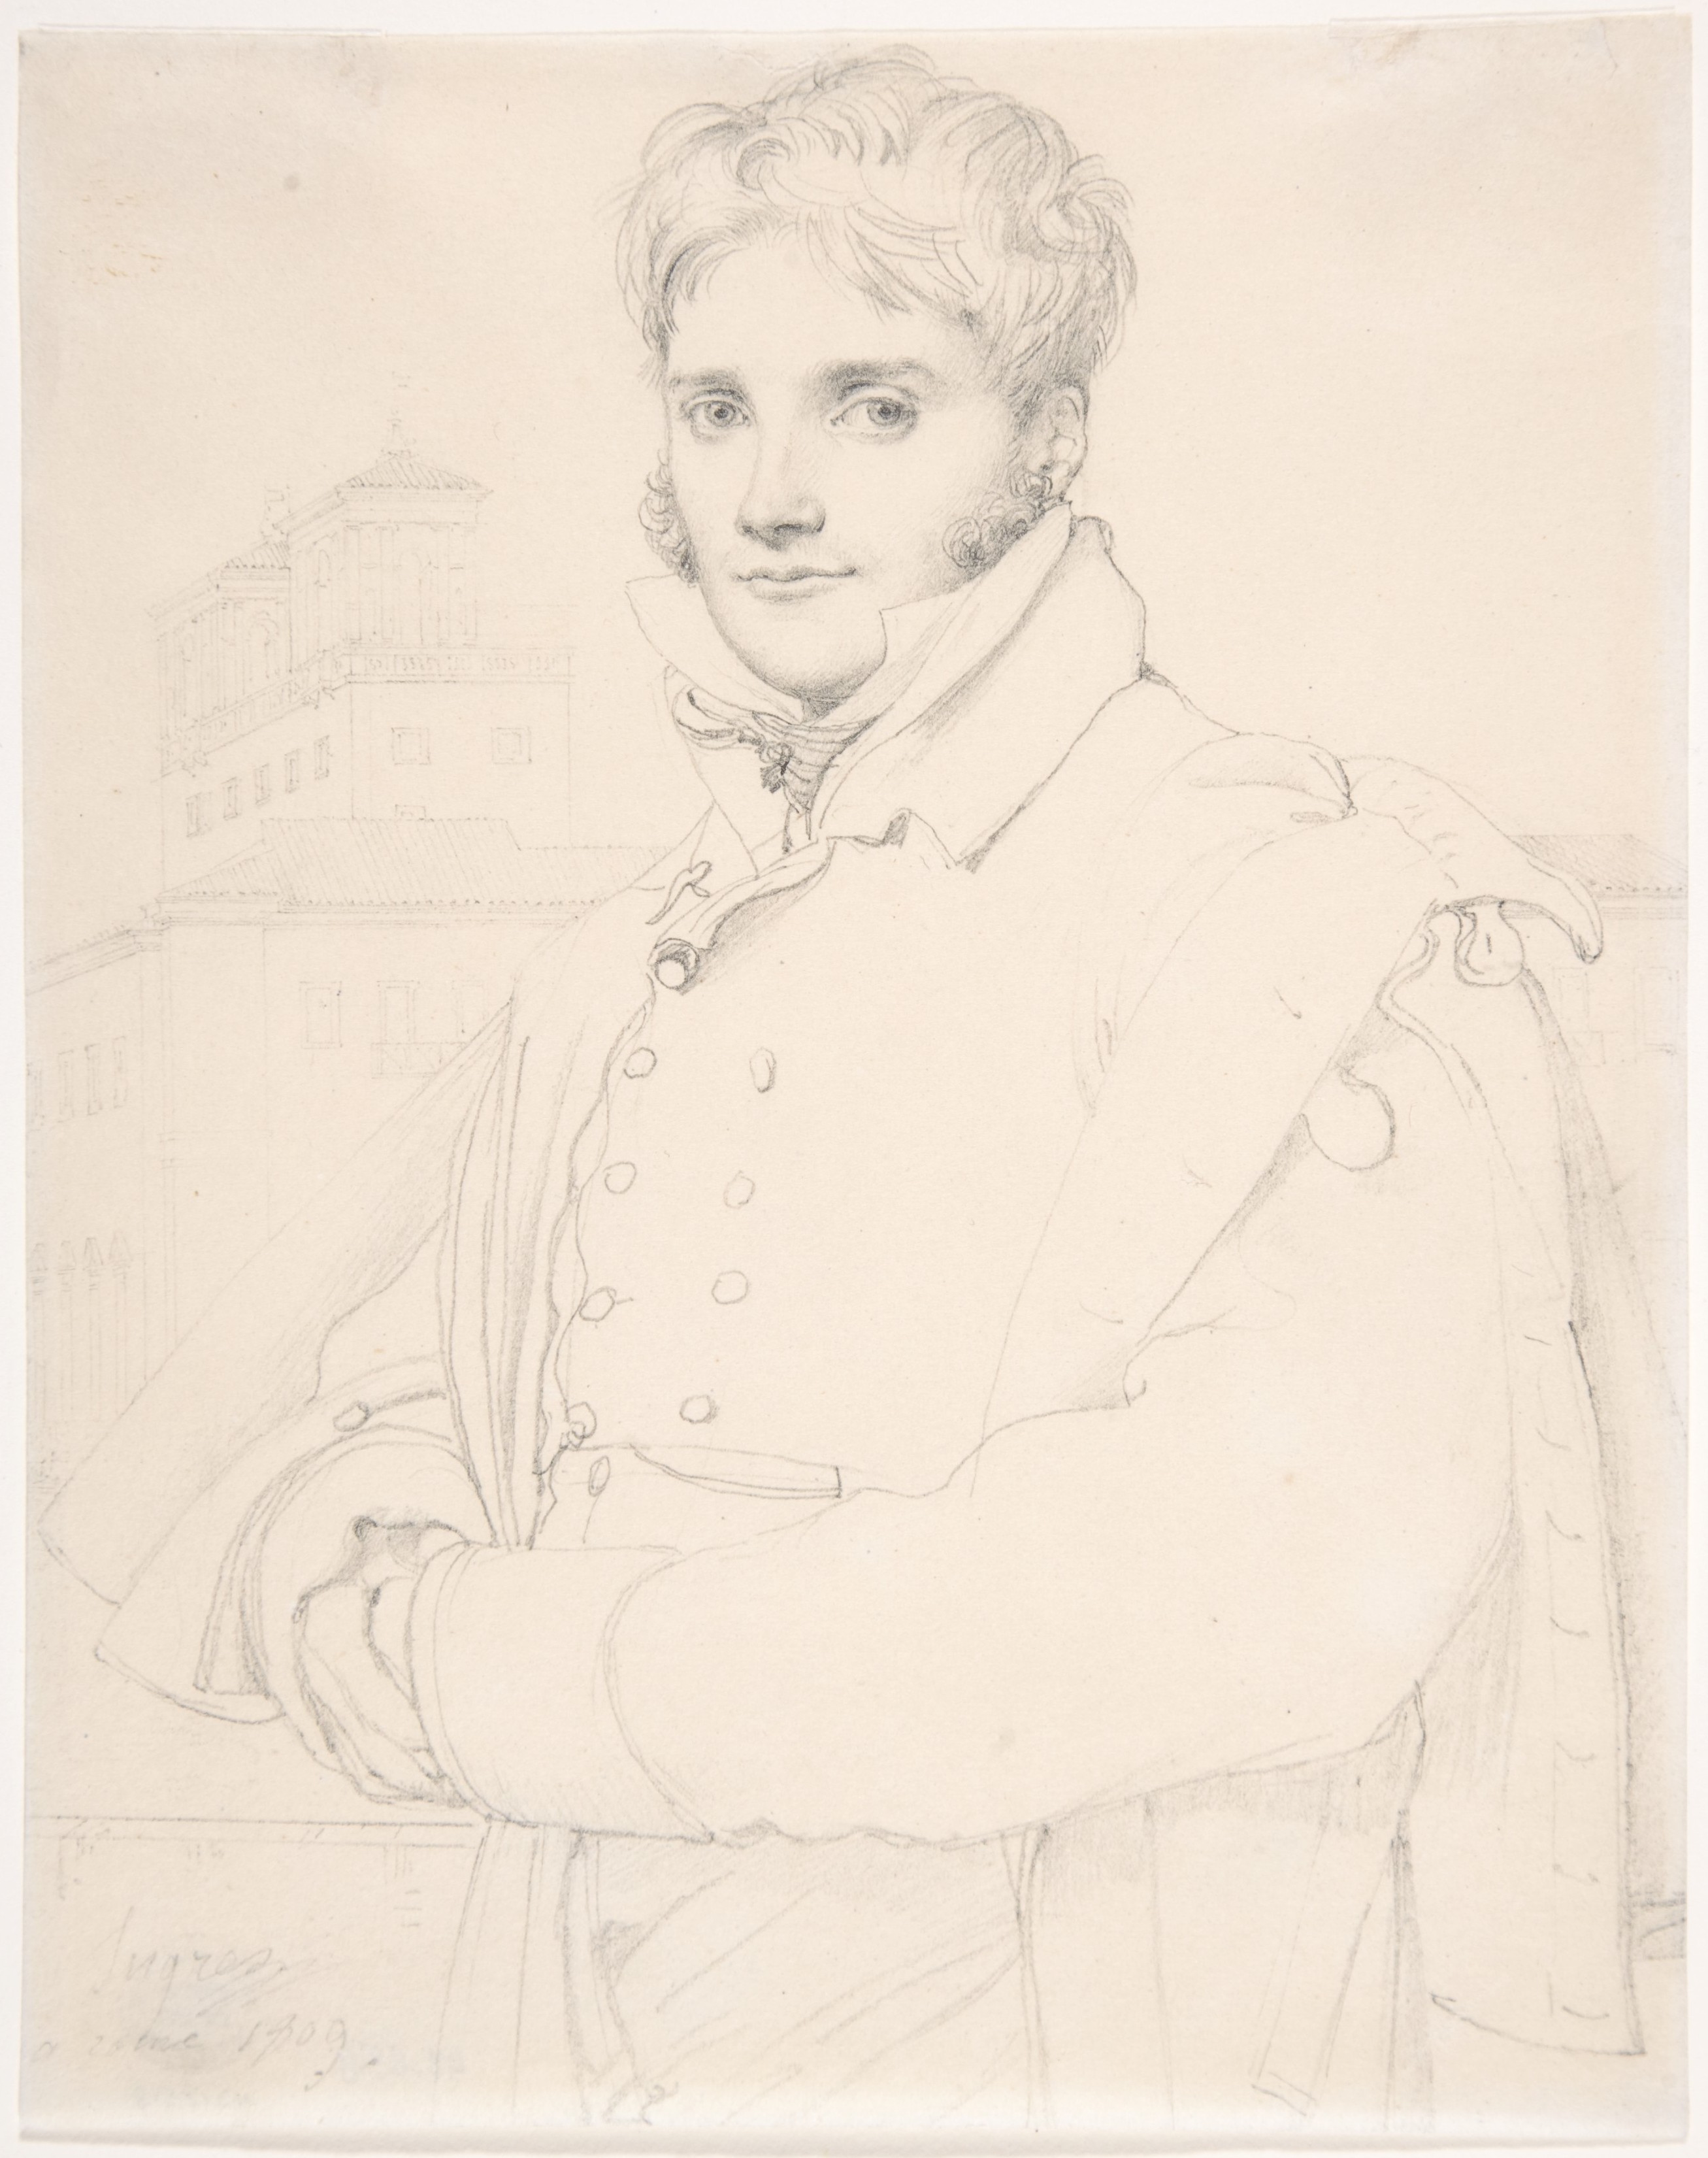 Jean Auguste Dominique Ingres, Merry-Joseph Blondel (1781-1853), 1809, The Metropolitan Museum of Art, 43.85.8. Domaine public.